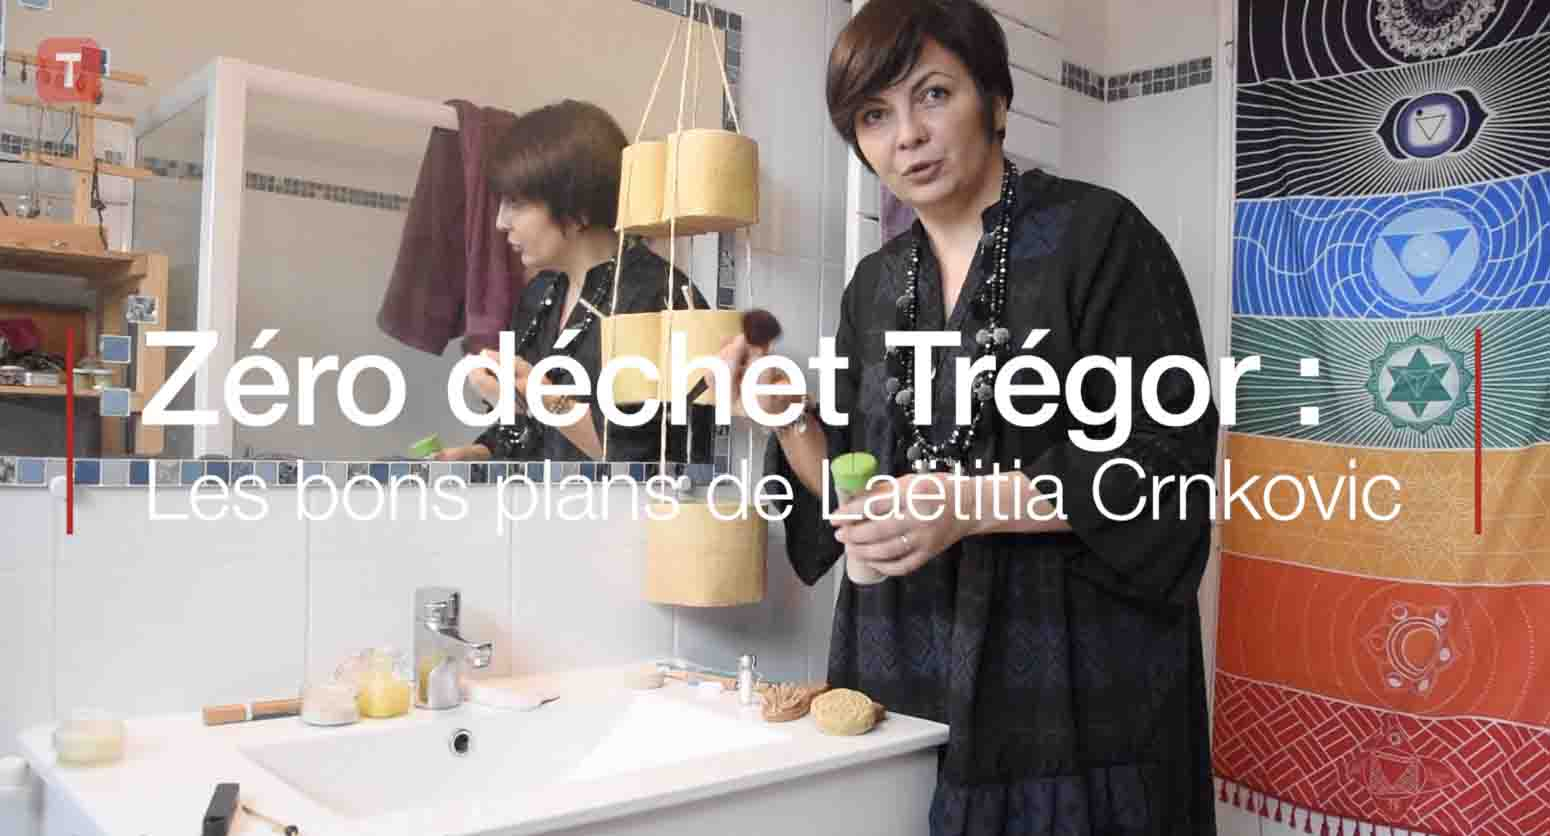 Zéro déchet Trégor : une salle de bains zéro déchets (Le Télégramme)